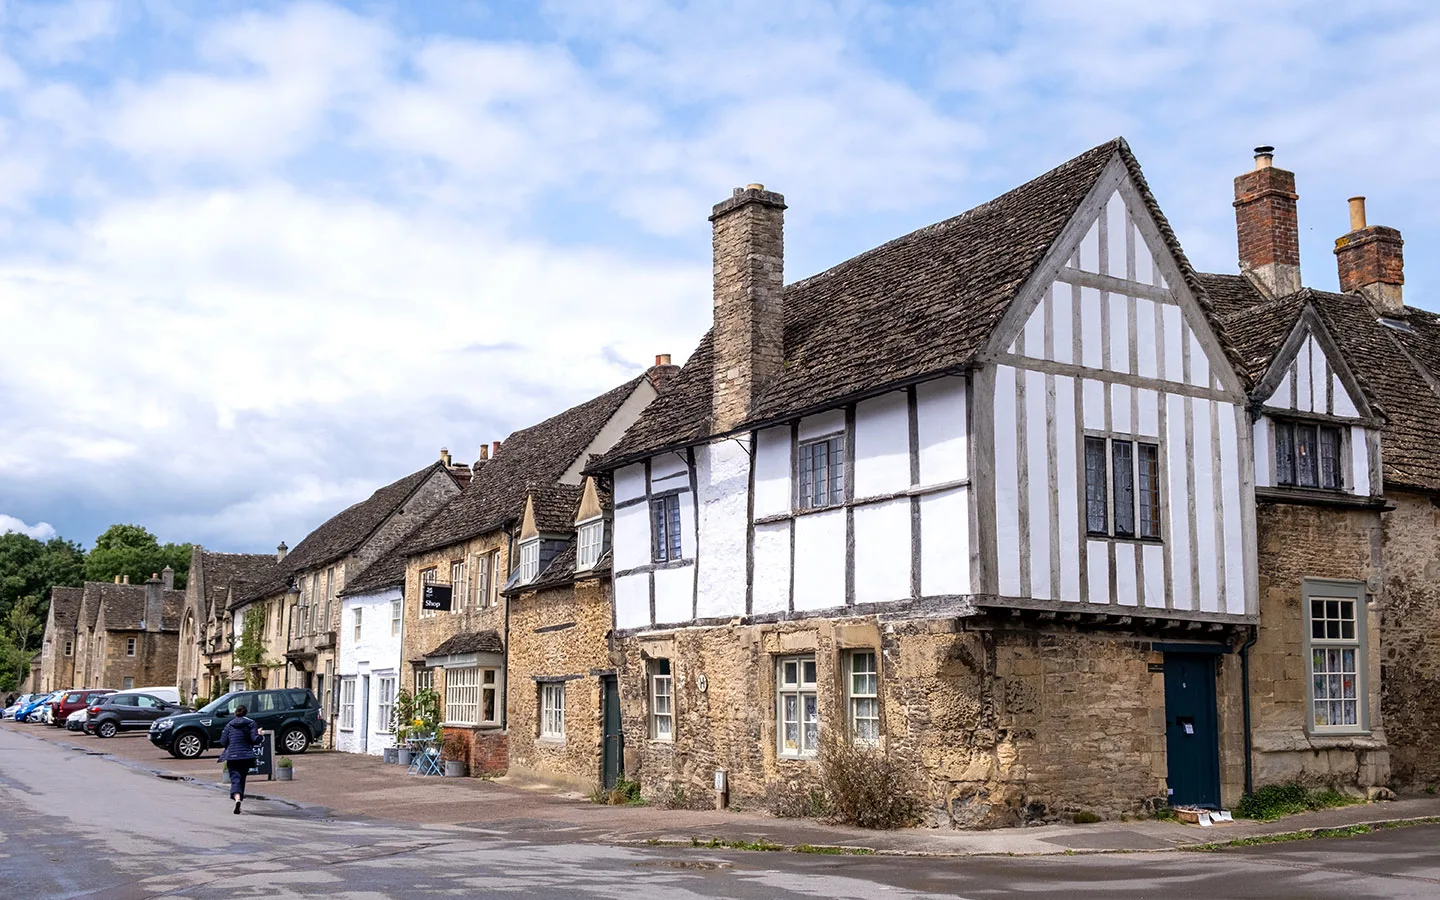 Lacock village in Wiltshire, Downton Abbey filming location